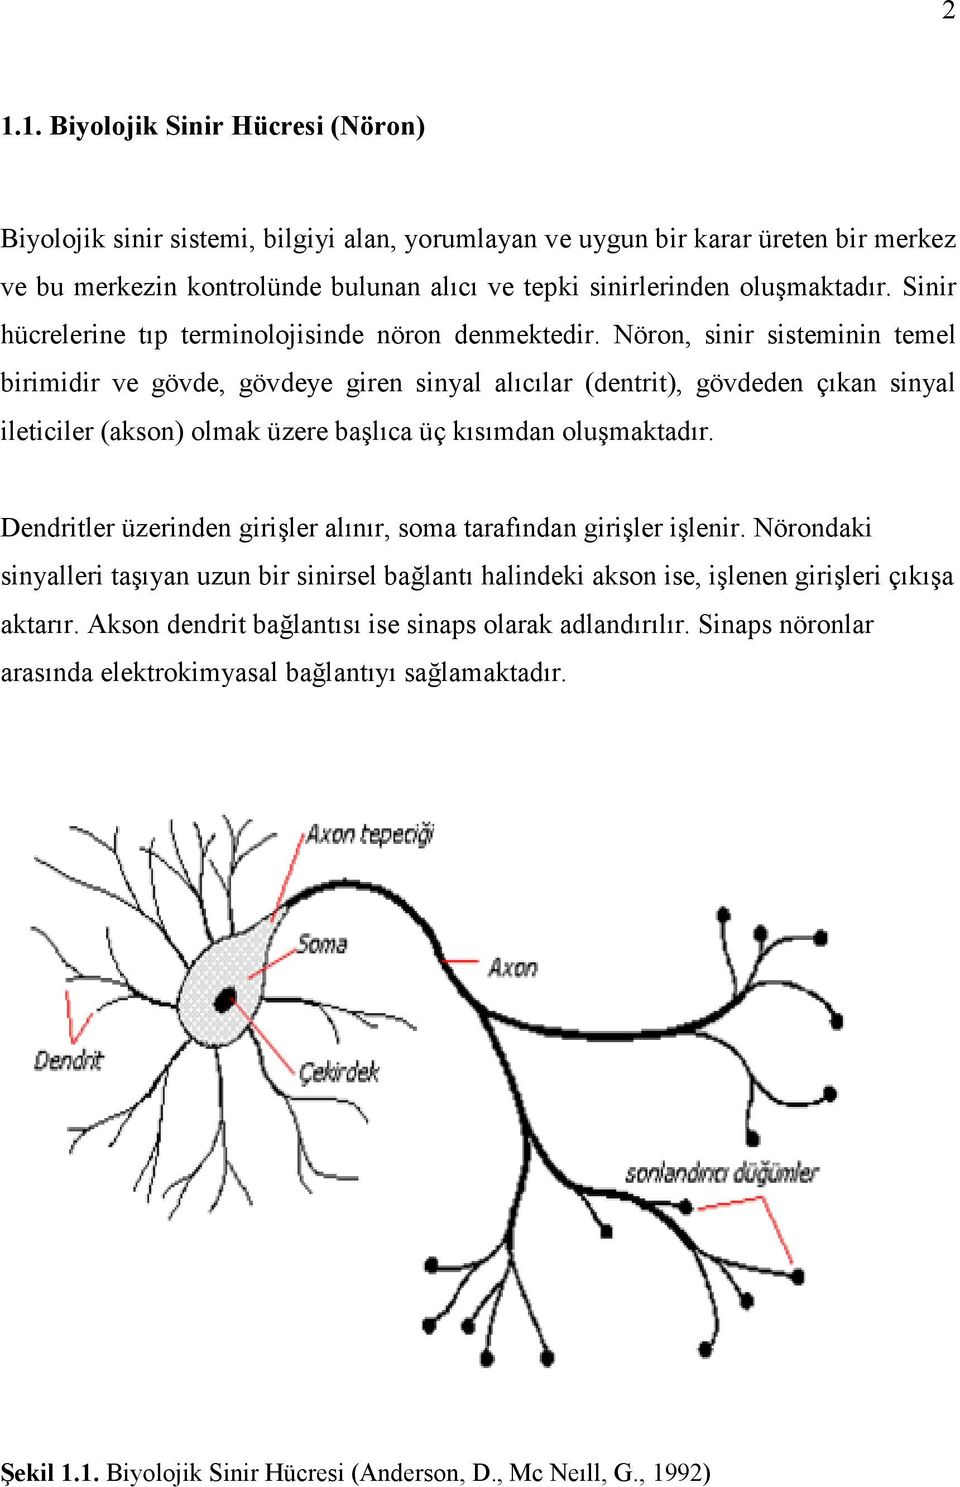 Nöron, sinir sisteminin temel birimidir ve gövde, gövdeye giren sinyal alıcılar (dentrit), gövdeden çıkan sinyal ileticiler (akson) olmak üzere başlıca üç kısımdan oluşmaktadır.